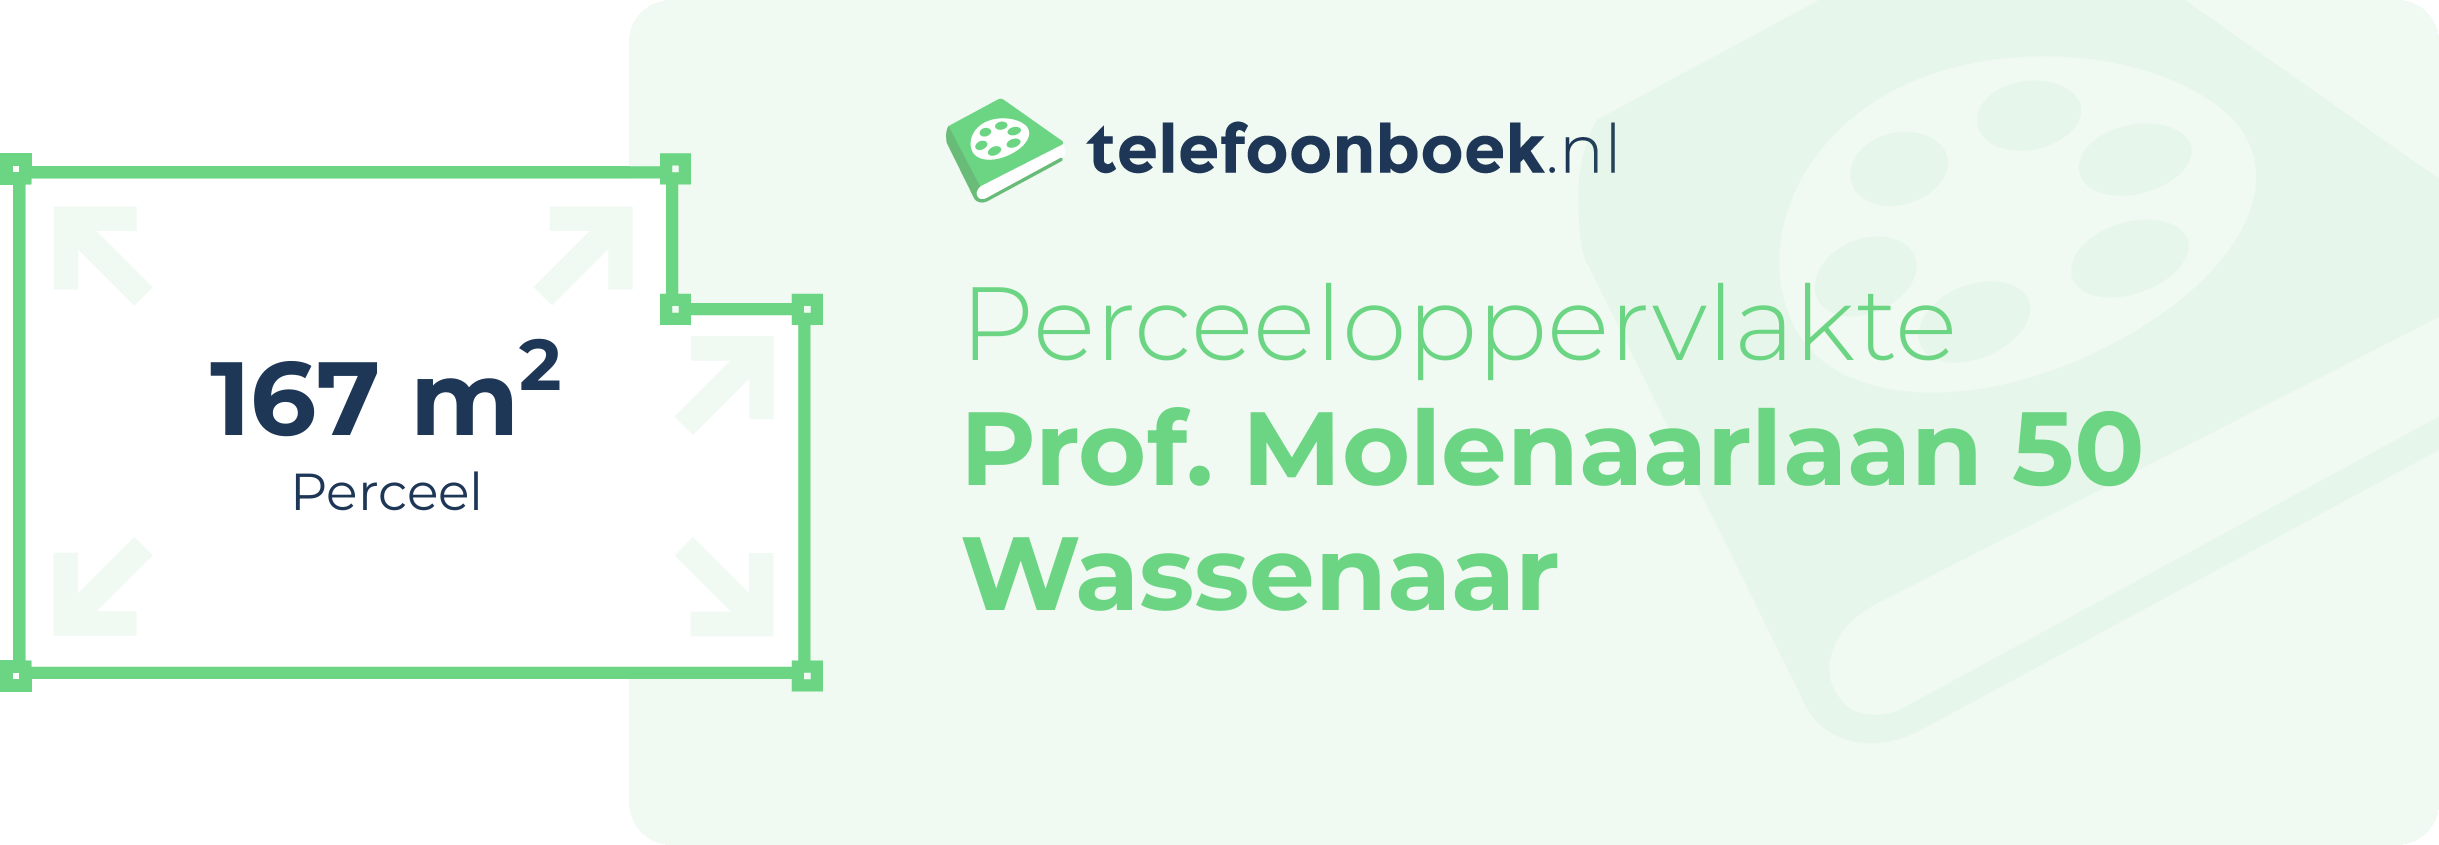 Perceeloppervlakte Prof. Molenaarlaan 50 Wassenaar